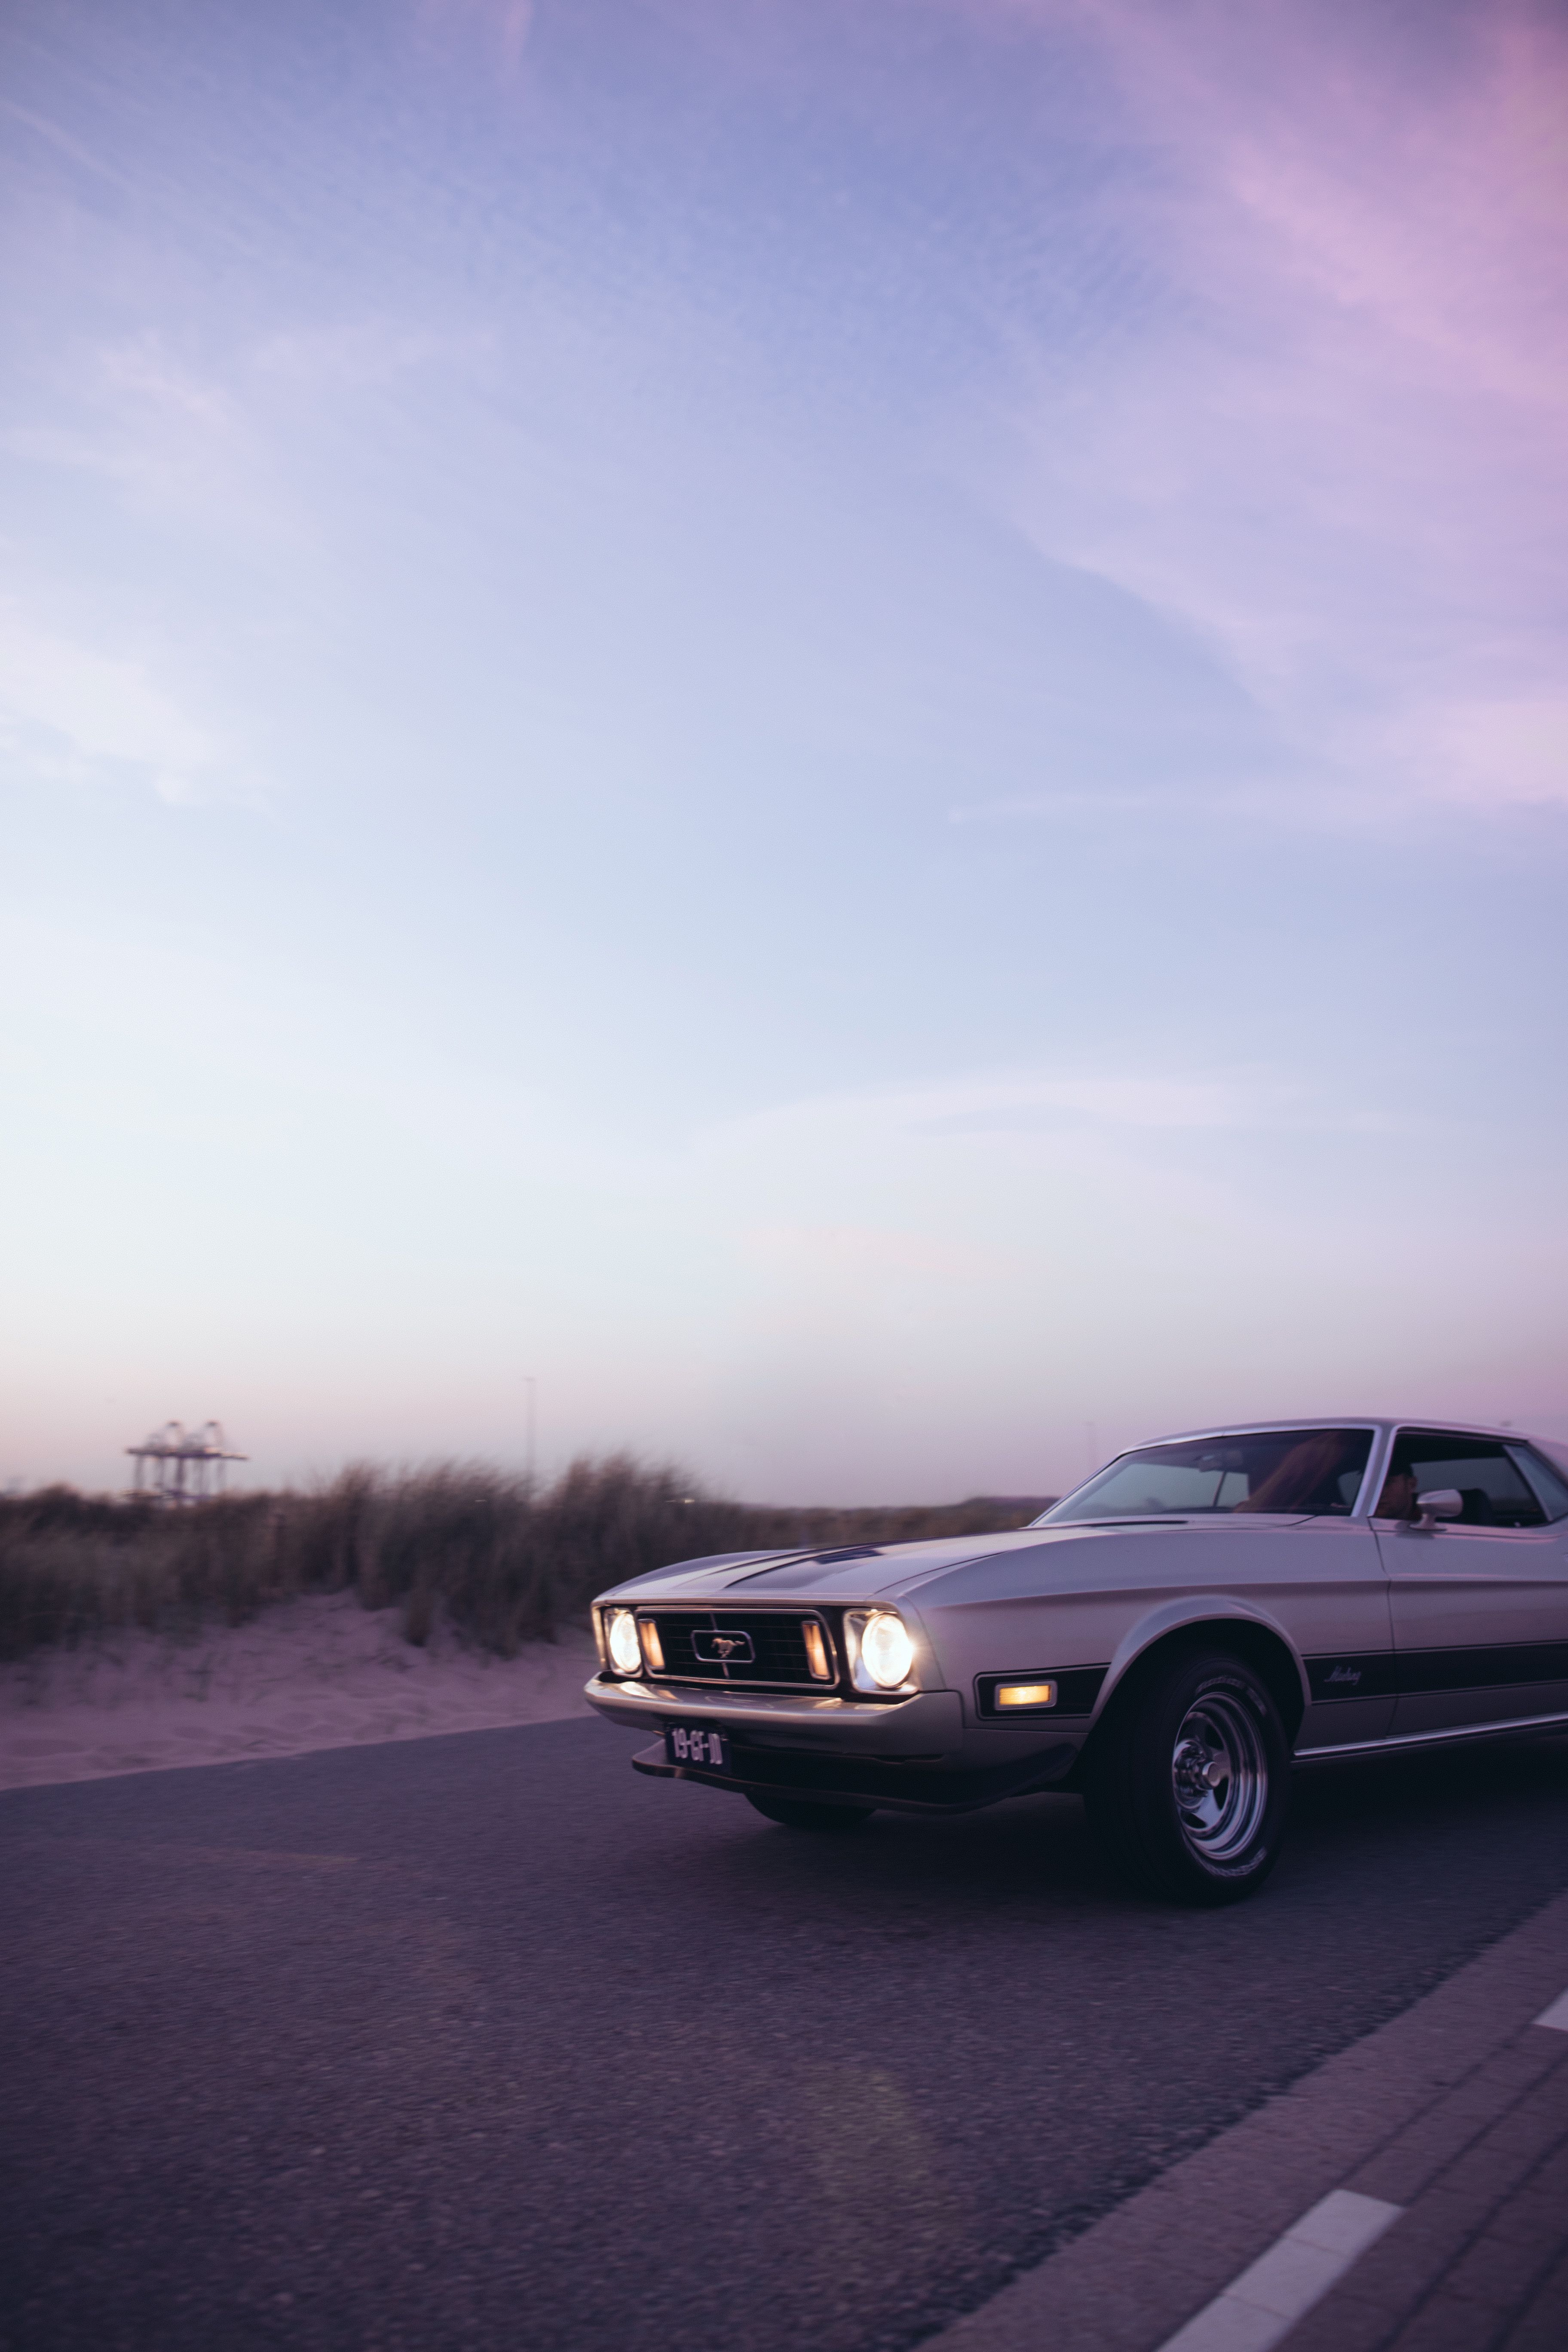 Driving mustang. Mustang wallpaper, Car wallpaper, Retro cars